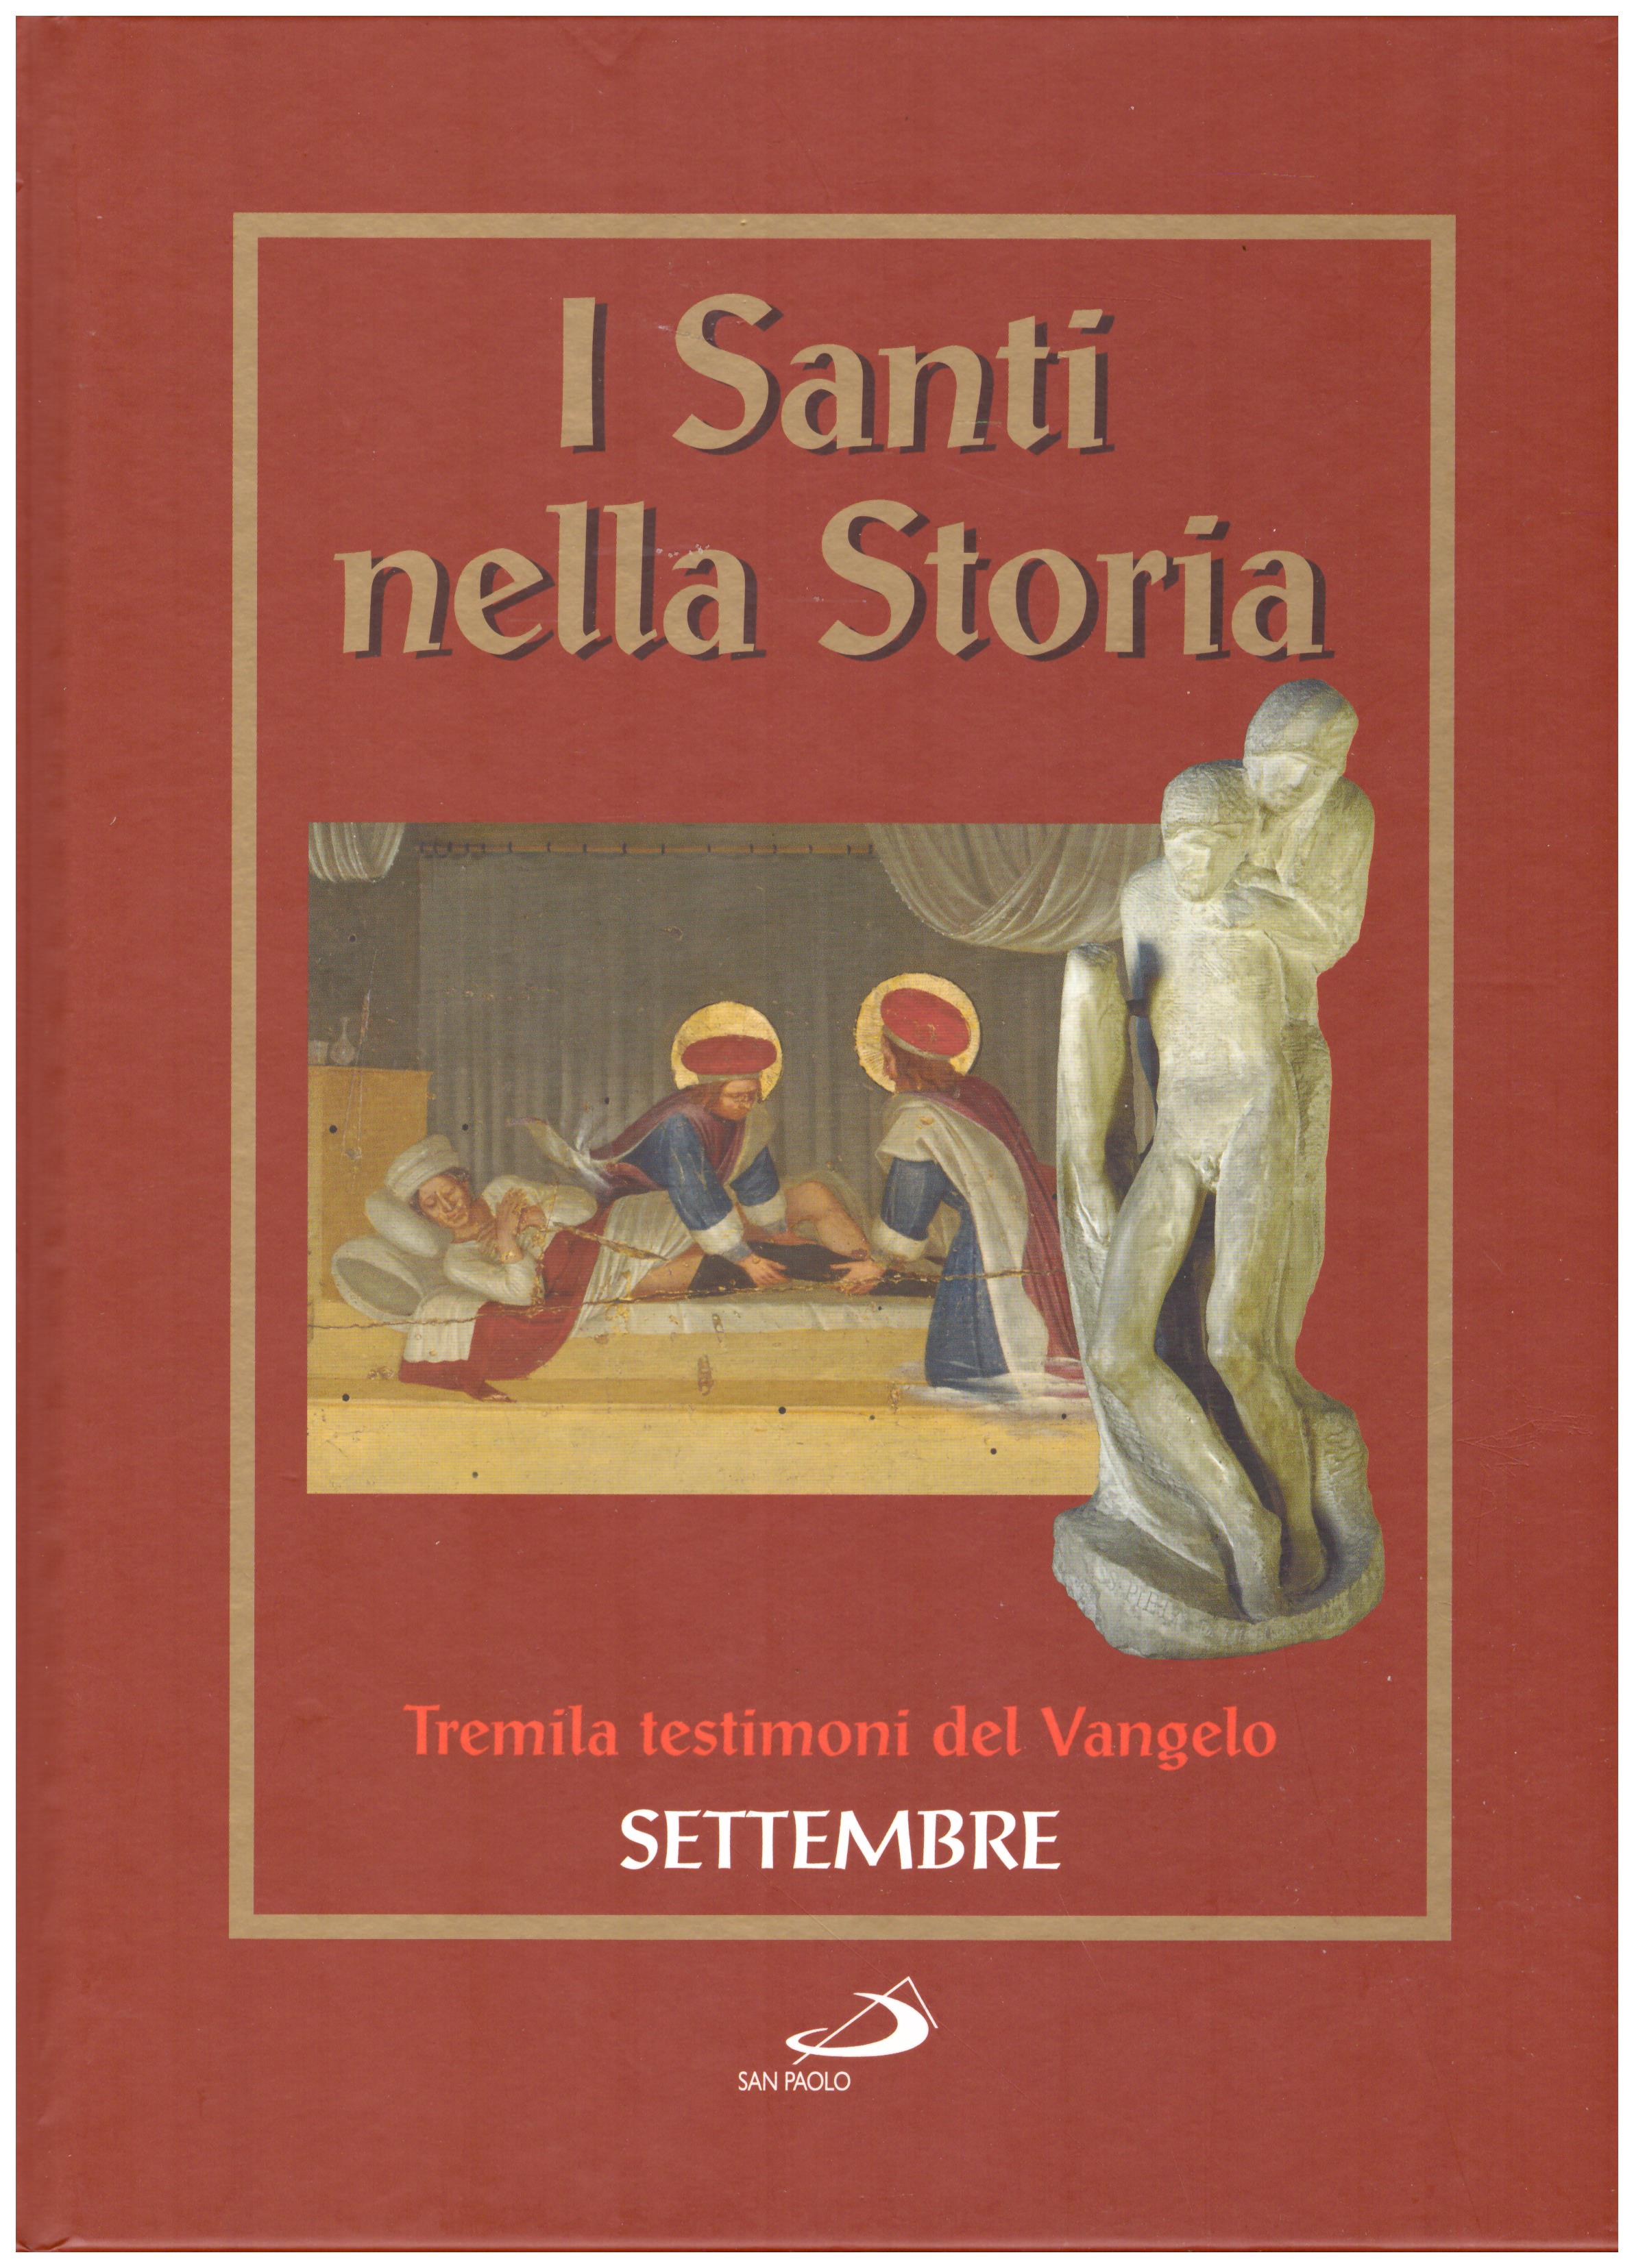 Titolo: I santi nella storia, tremila testimoni del Vangelo, Settembre  Autore : AA.VV.   Editore: San Paolo 2006